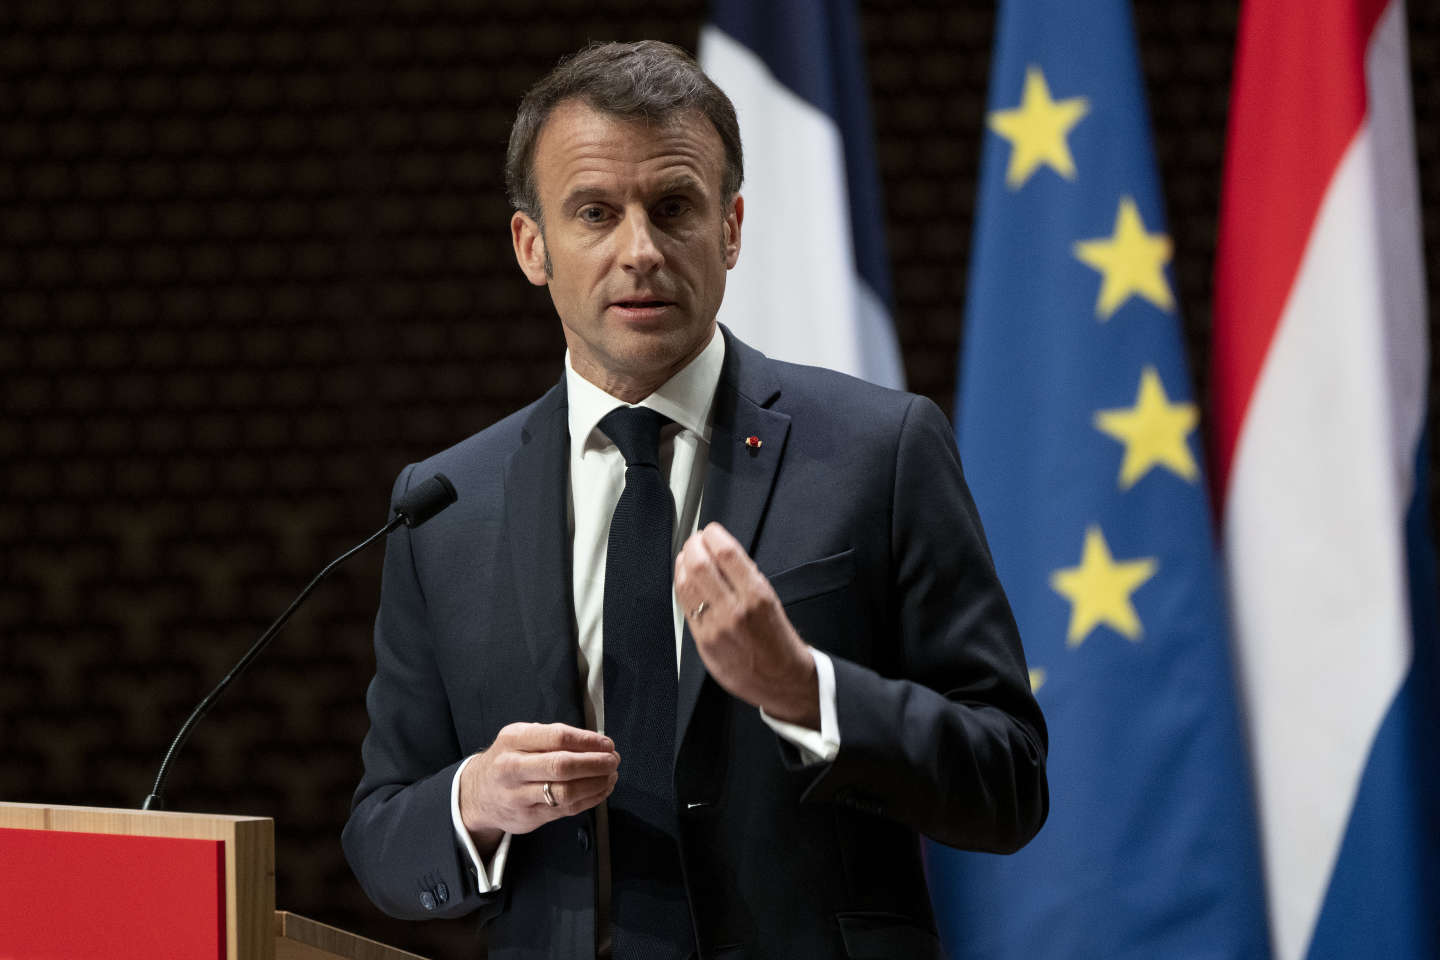 « L’autonomie stratégique est à la fois l’ADN européen d’Emmanuel Macron et son cheval de bataille le plus clivant »